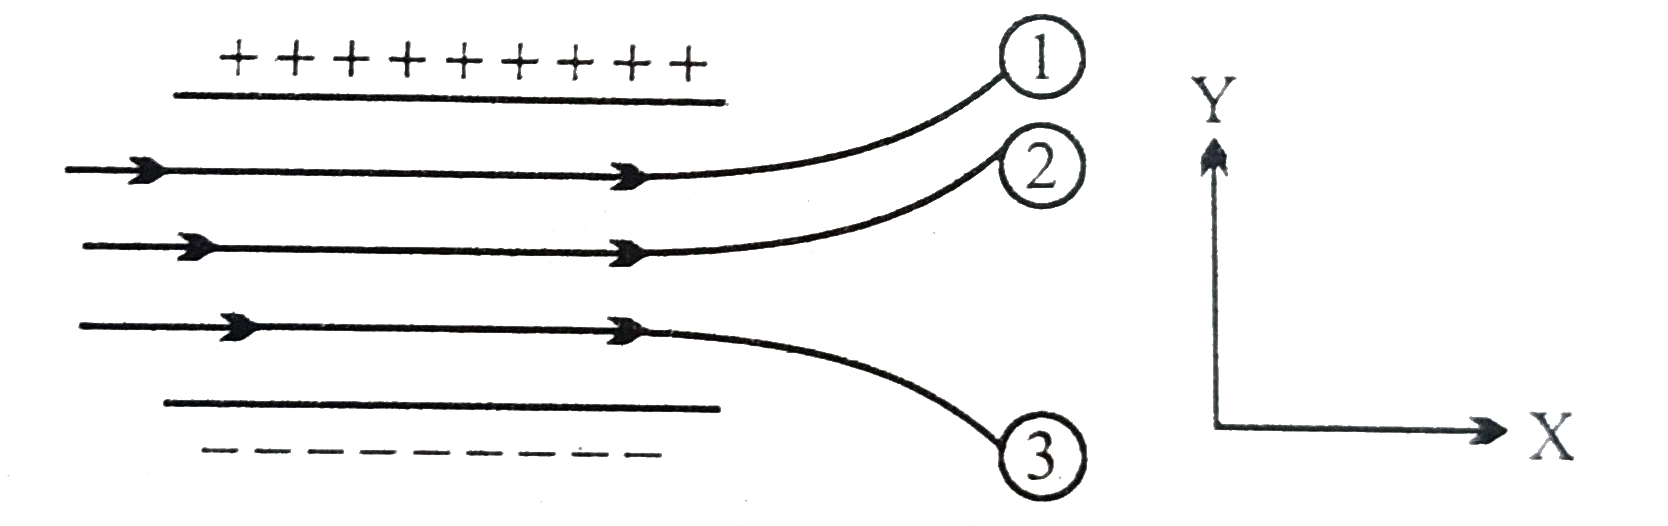 चित्र में किसी एकसमान स्थिरवैधुत क्षेत्र में तीन आवेशित कानो के पथचिन्ह दर्शाए गए है।  तीनो आवेशों के चिन्ह लिखिए।  इनमे से किस कण का आवेश-संहित अनुपात (q //m ) अधिकतम है ?